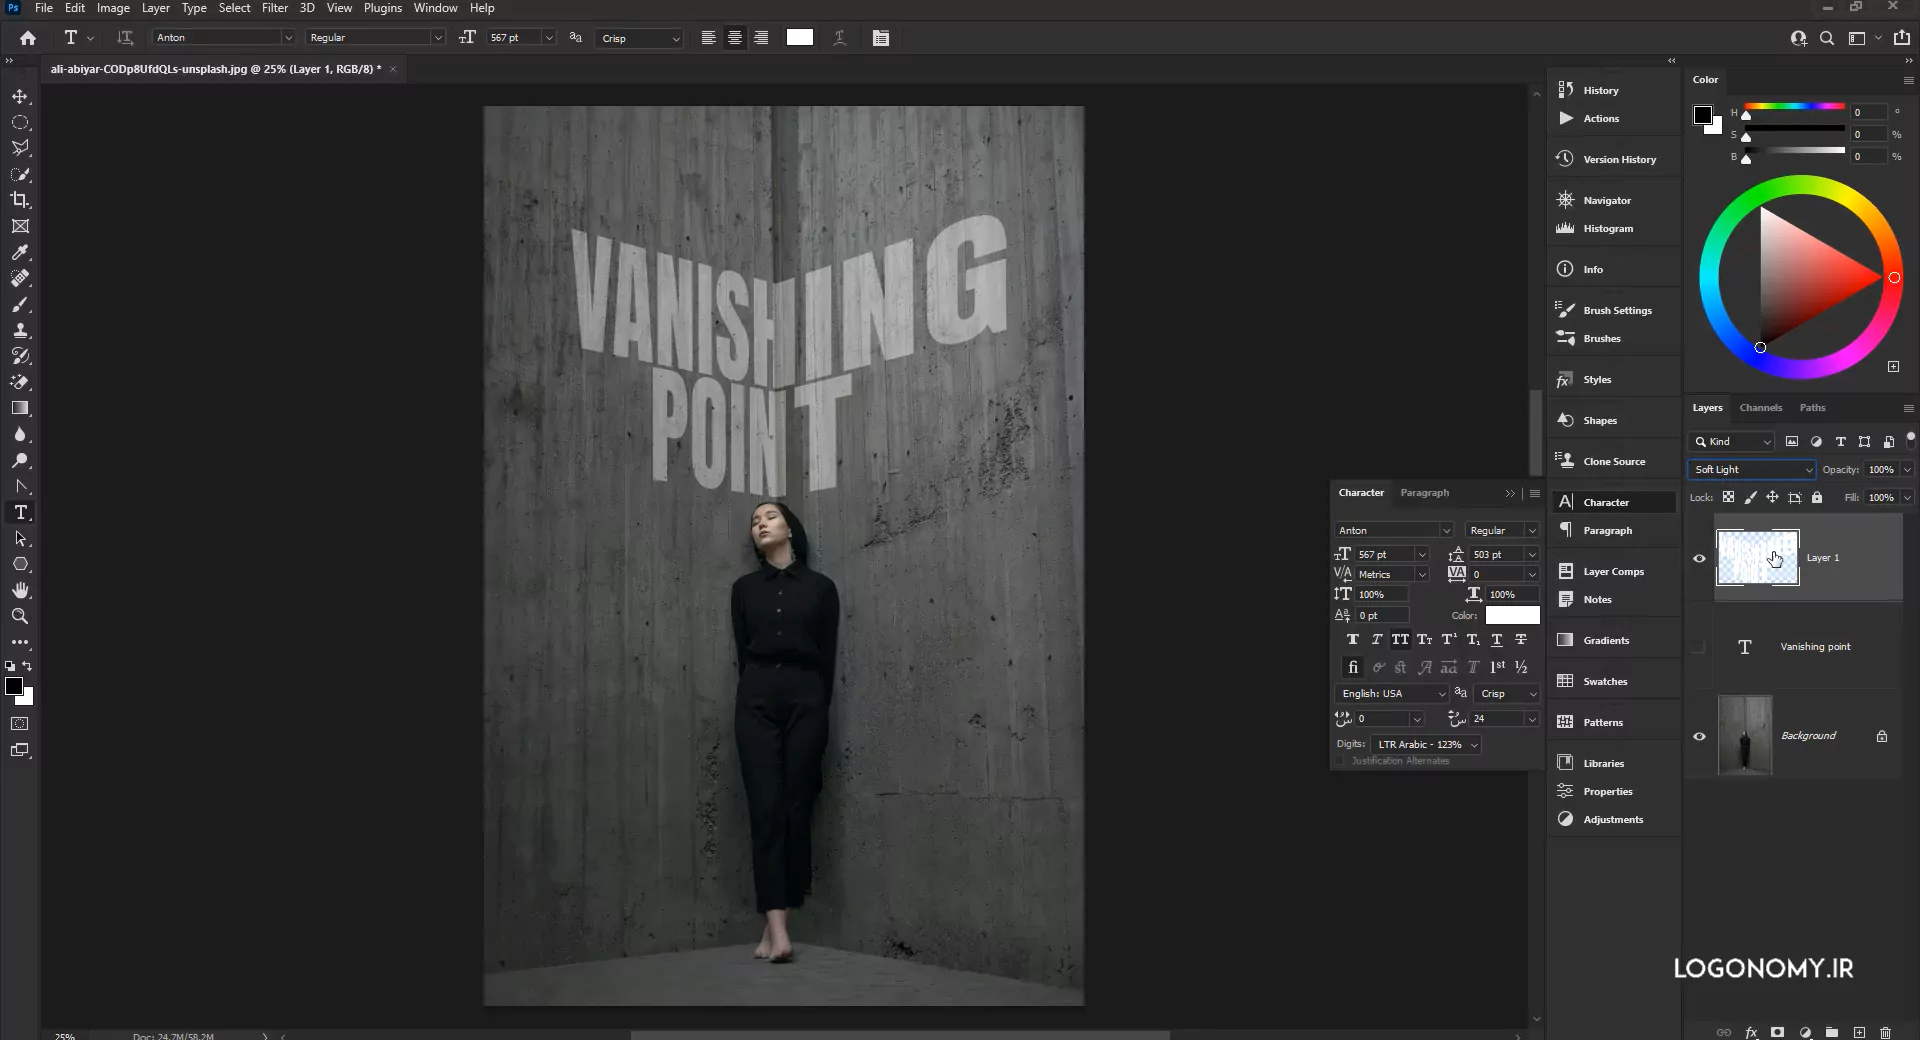 معرفی فیلتر Vanishing Point در نرم افزار فوتوشاپ برای ایجاد پرسپکتیو در تصاویر